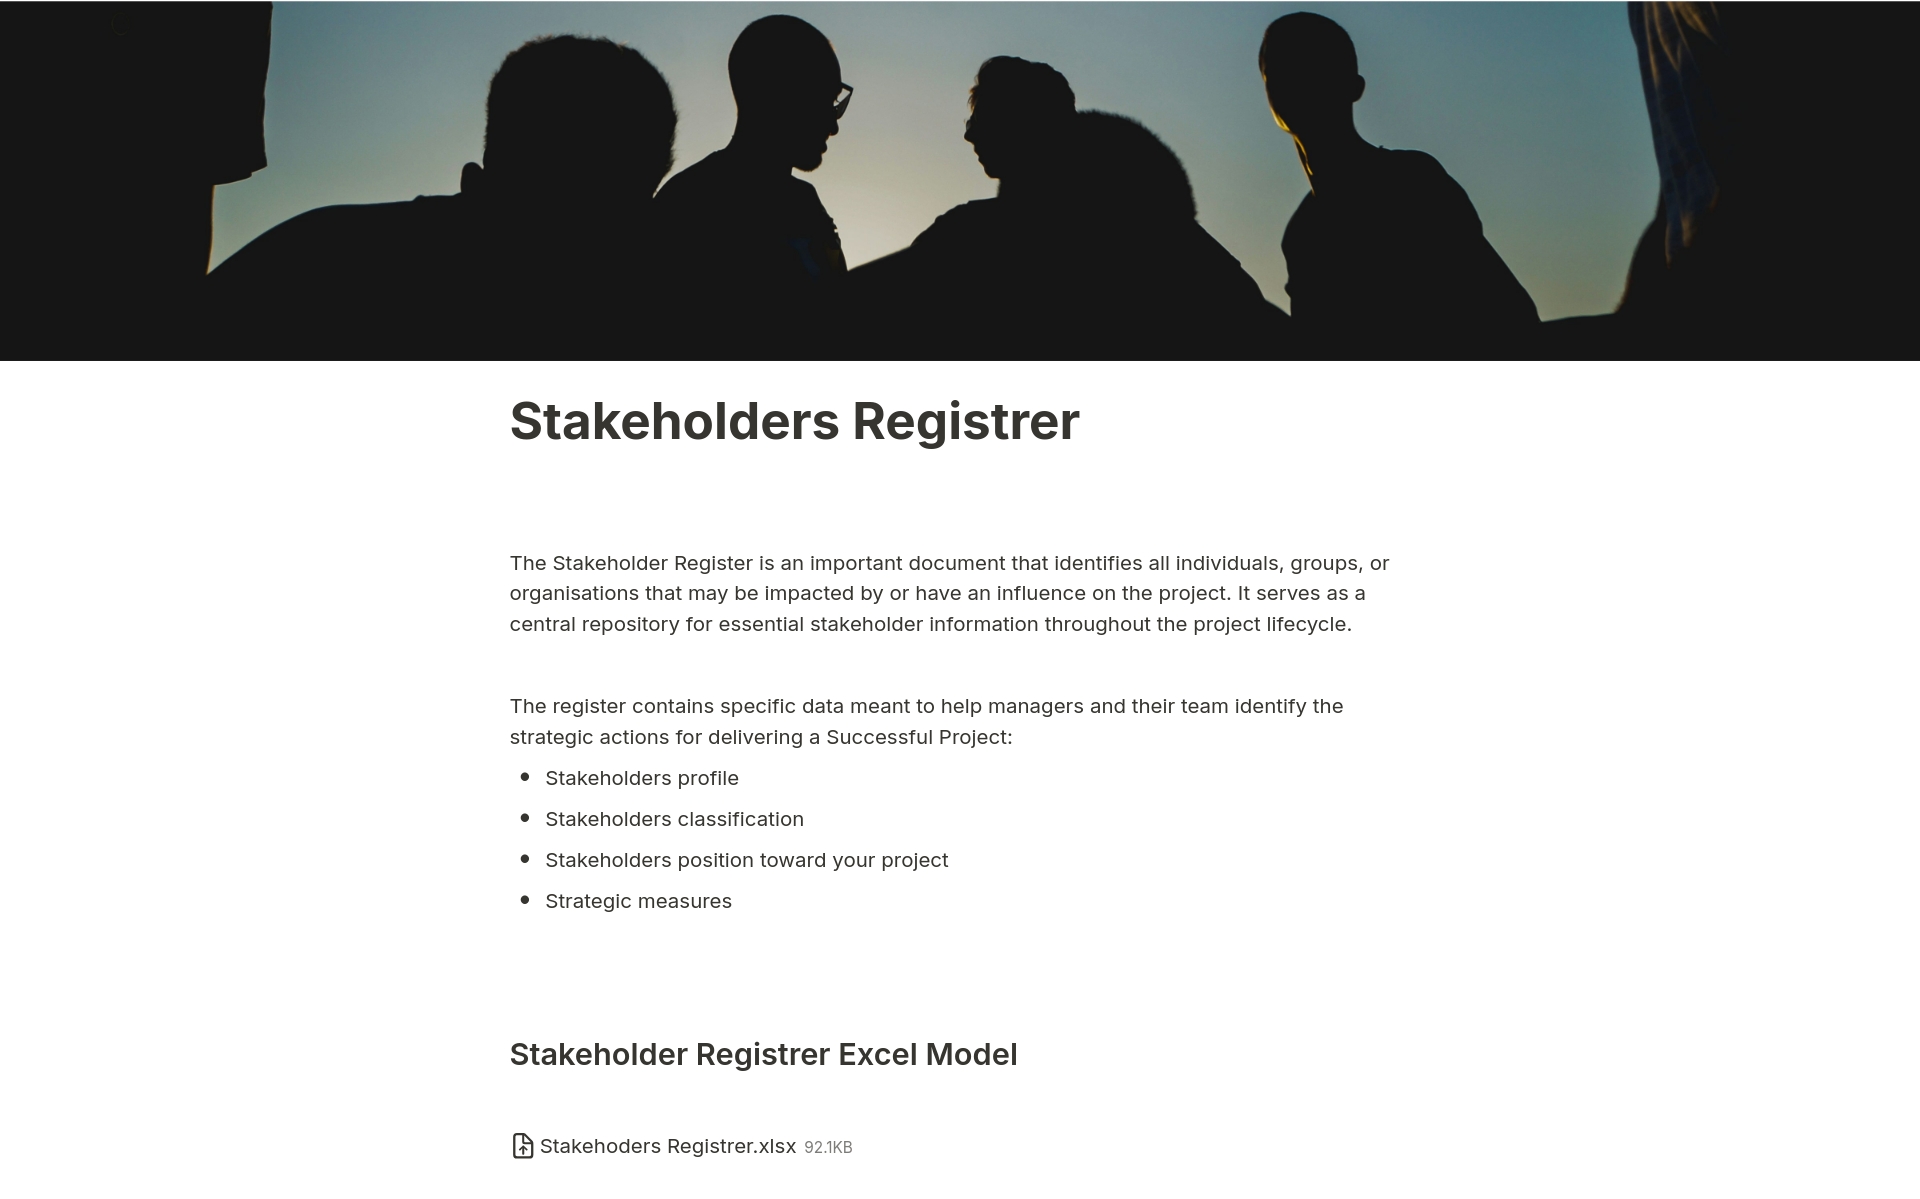 Uma prévia do modelo para Stakeholders Registrer